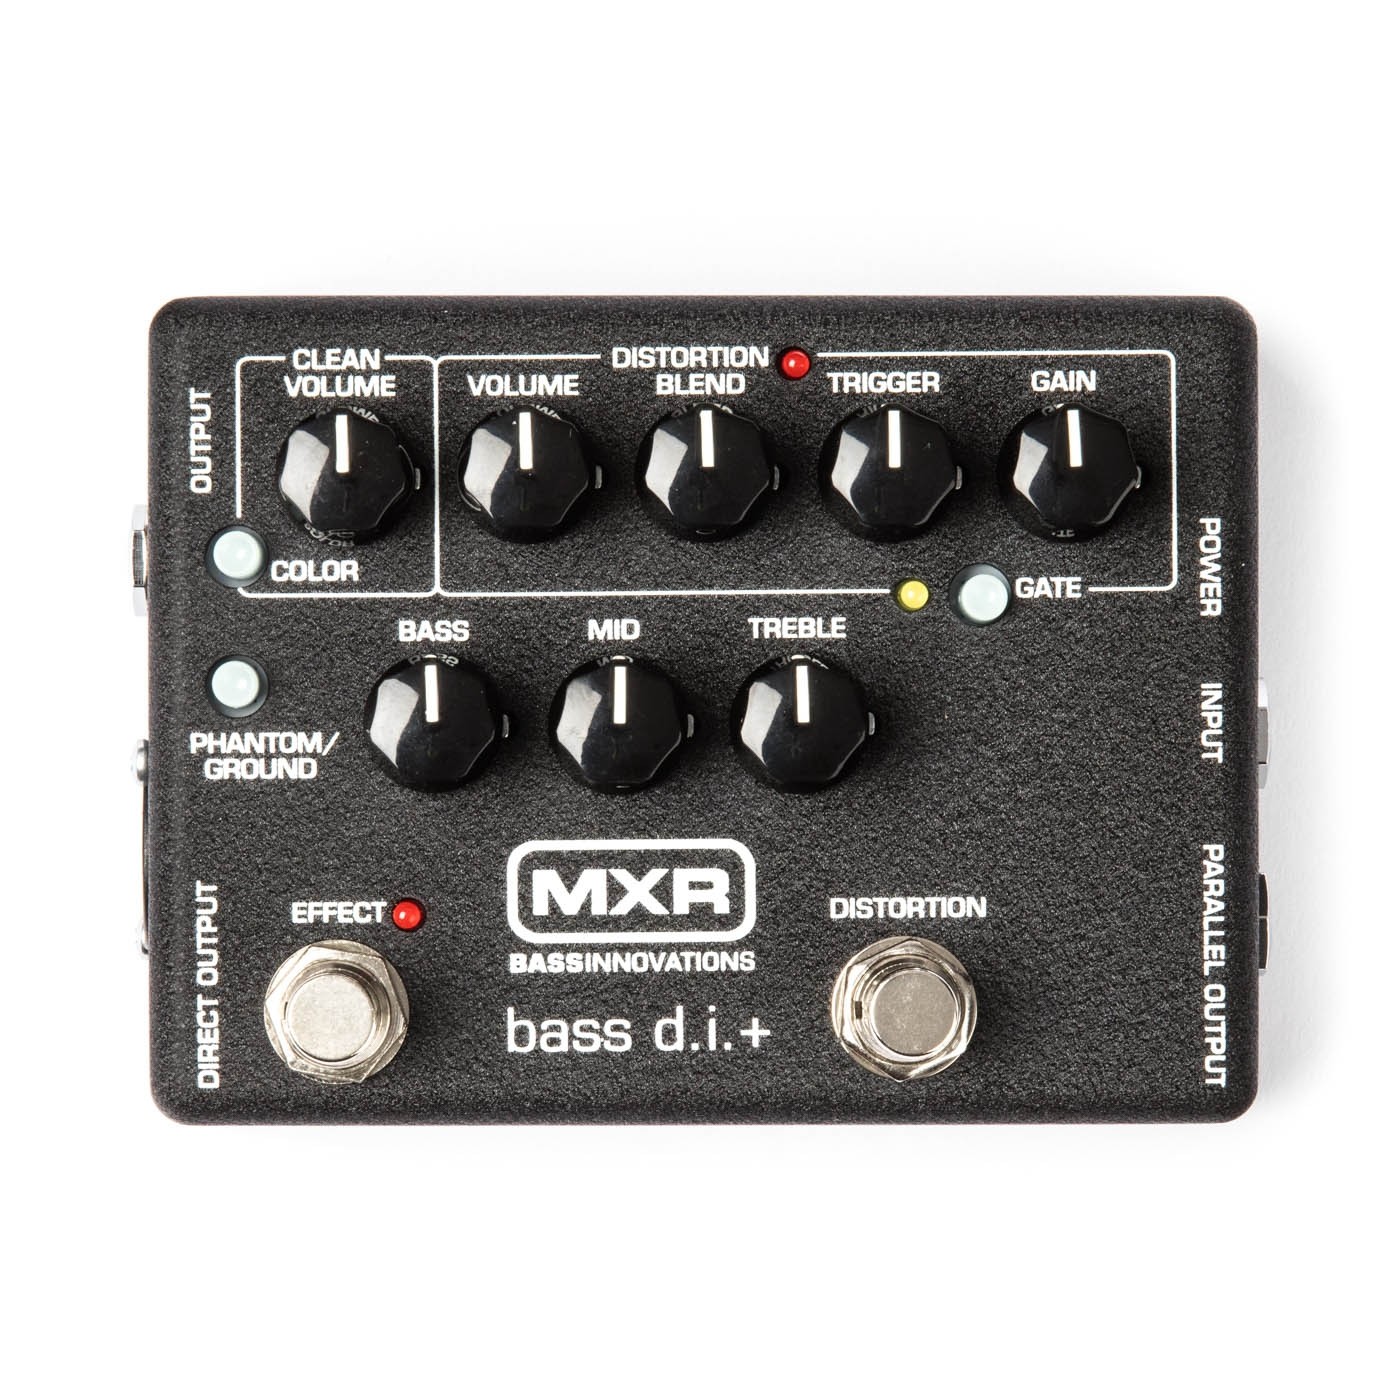 MXR M80 Bass D.I+ Distortion